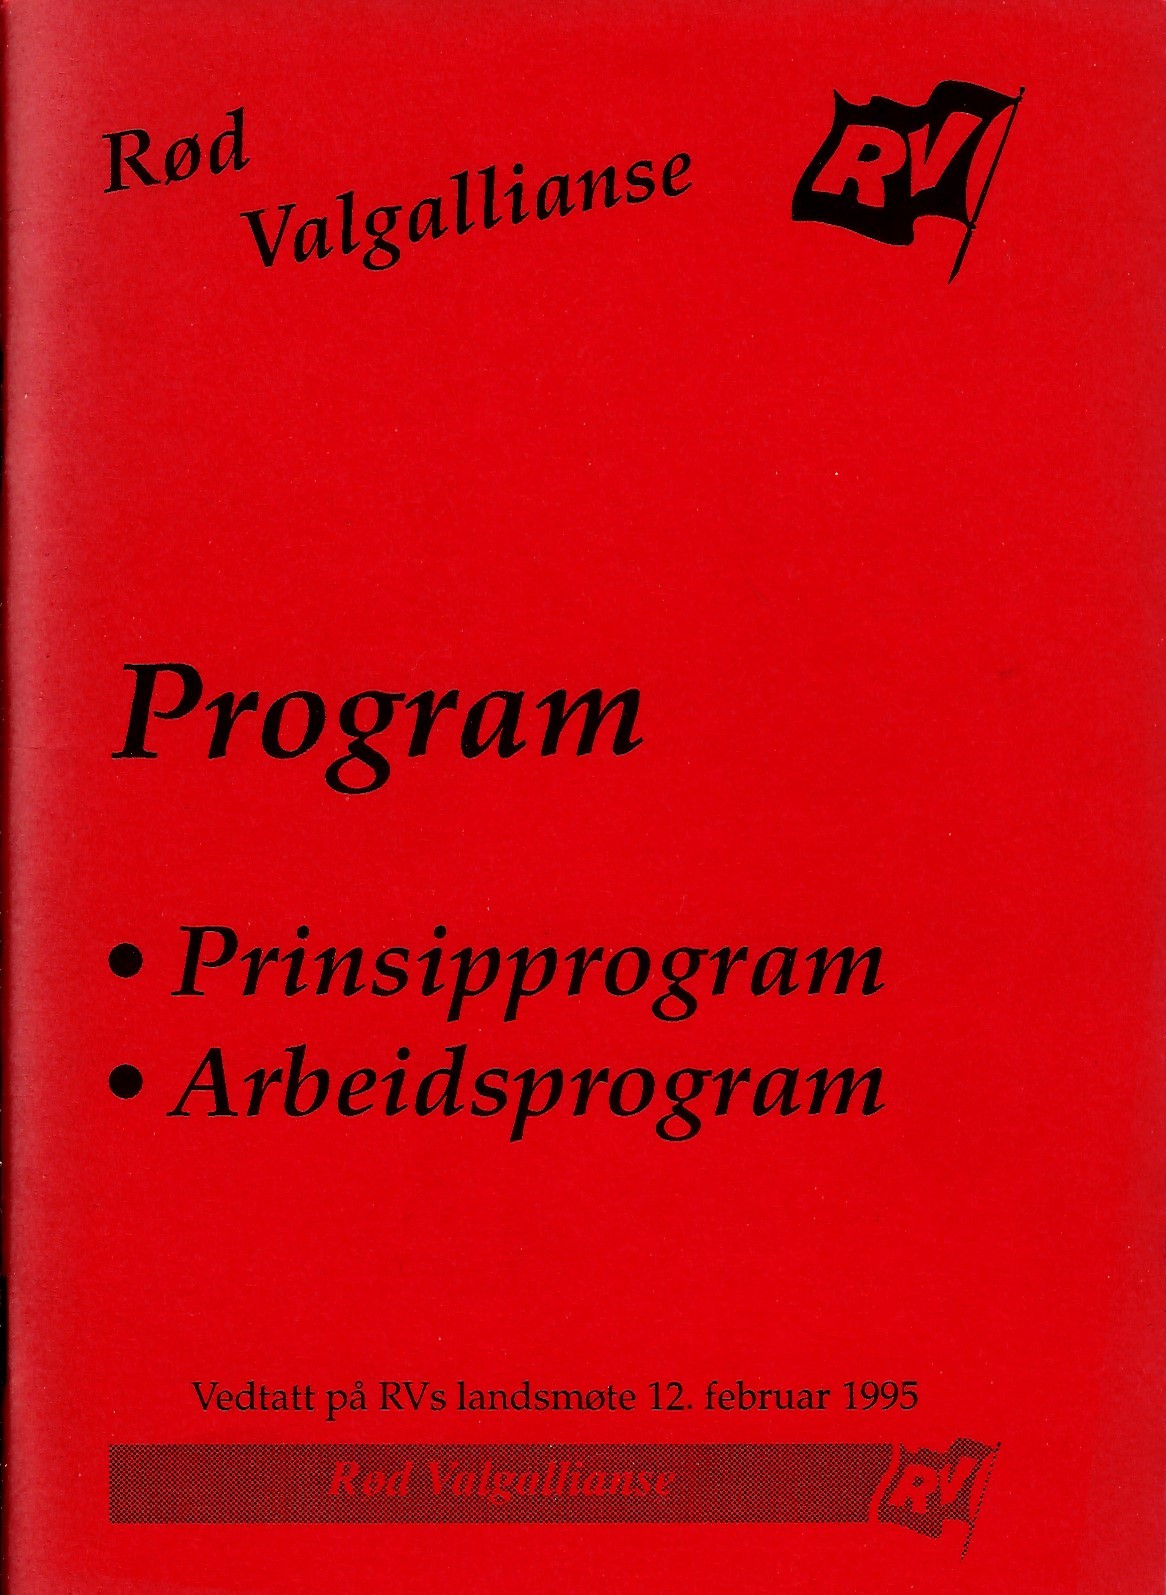 Program for RV 1975